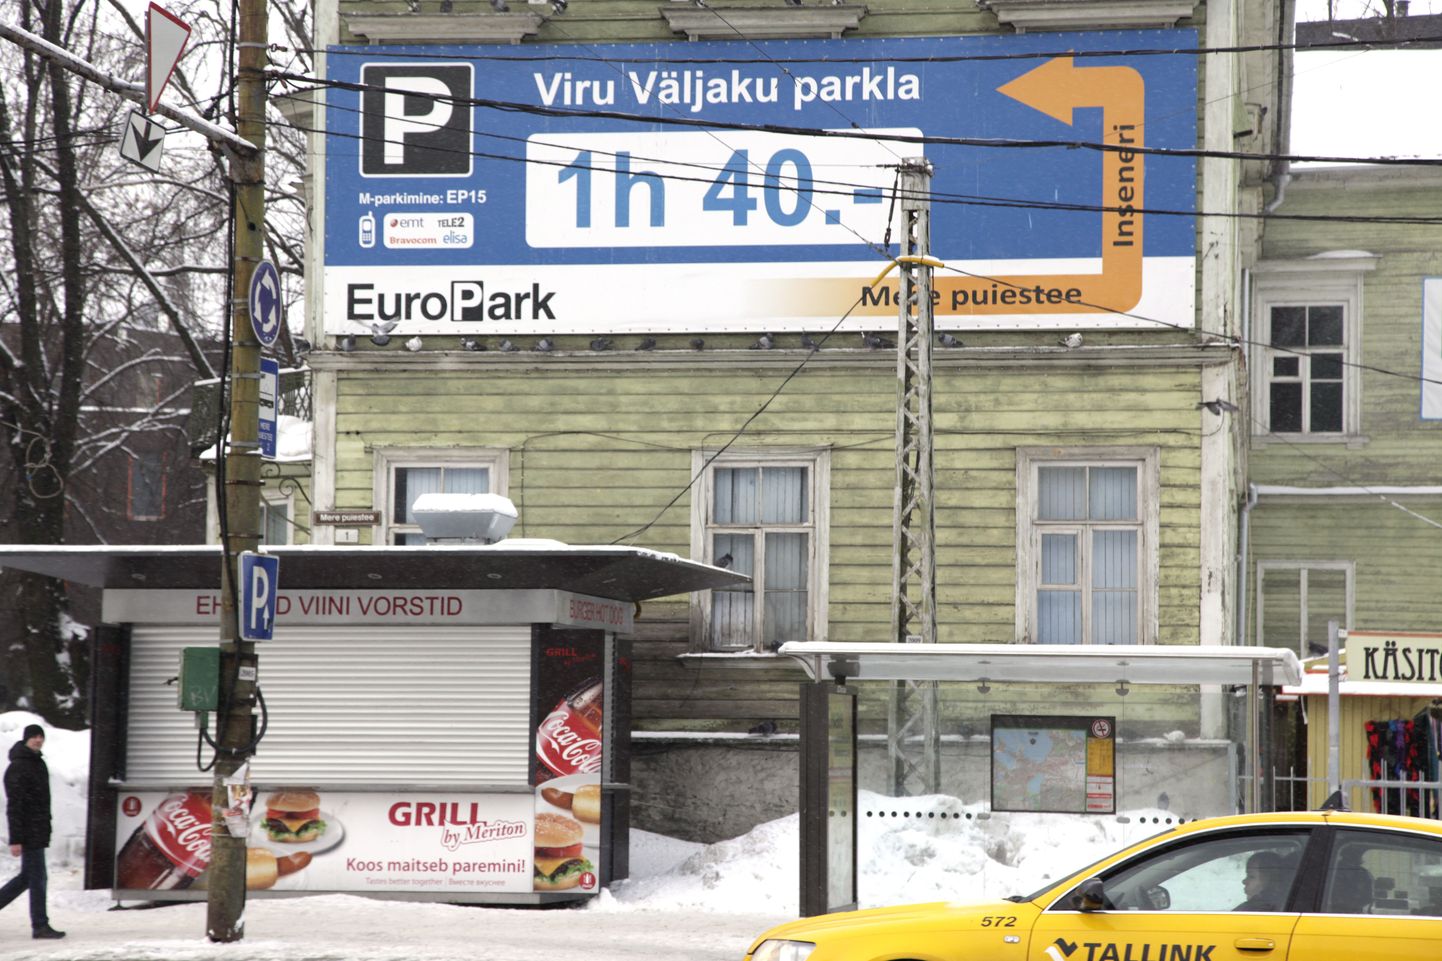 Реклама Еuropark обещает парковку за 40 денежных единиц.